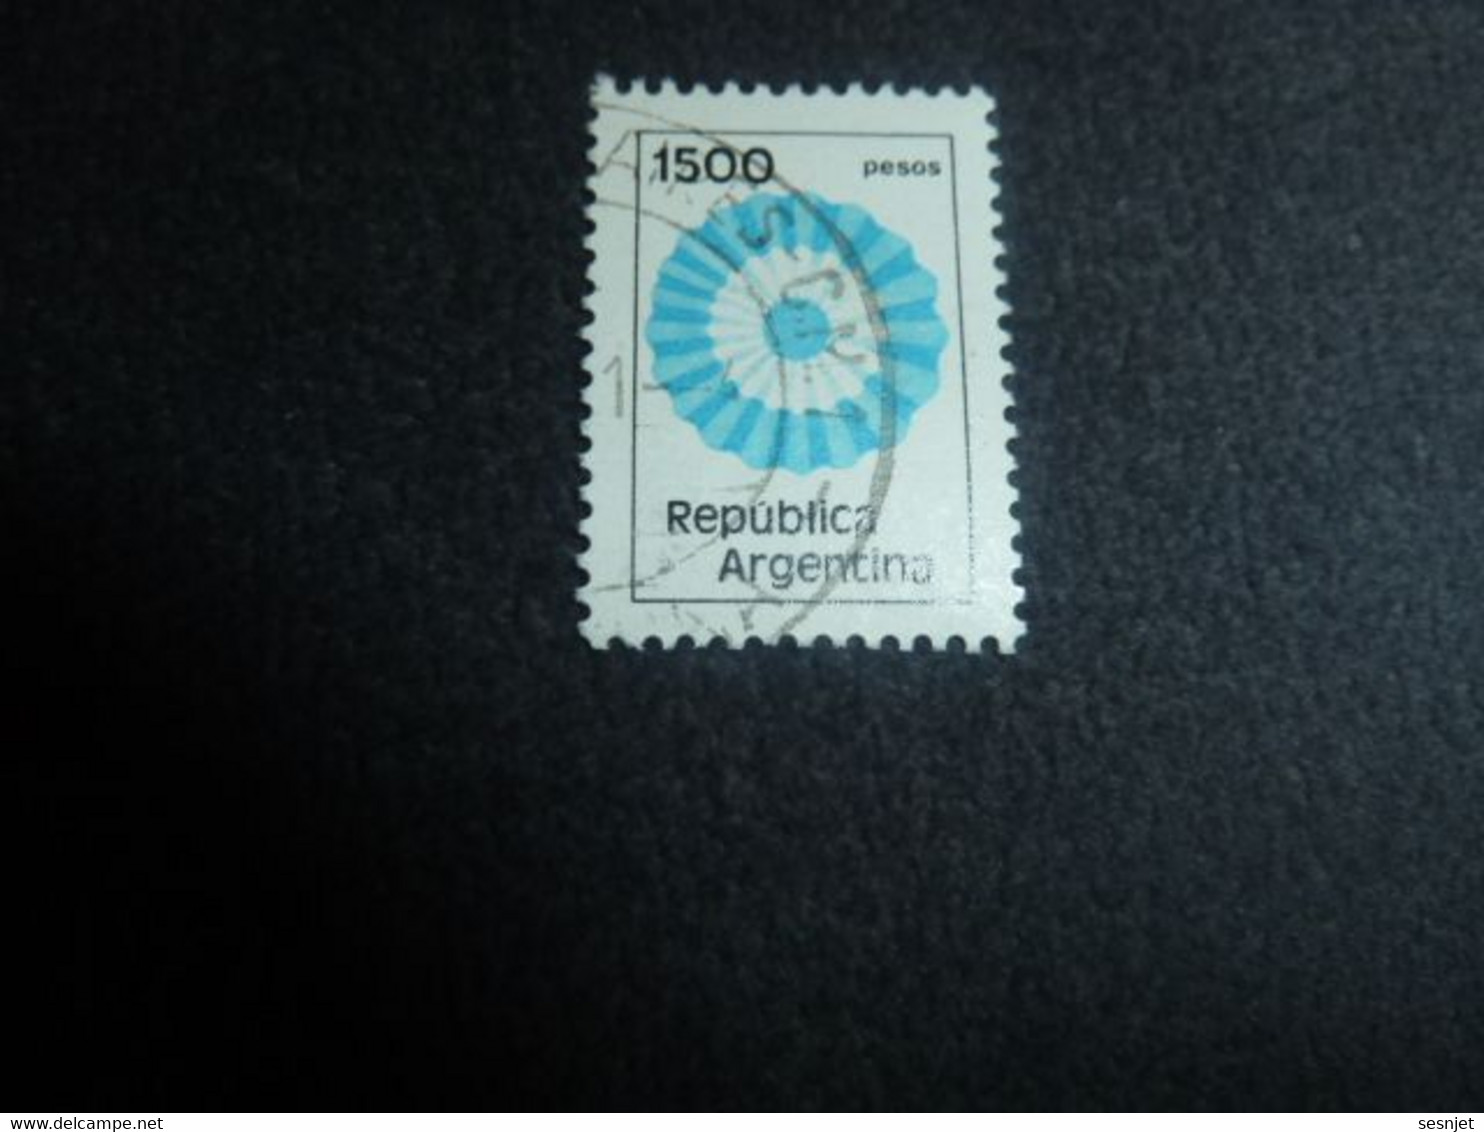 Republica Argentina - Rosace - 1500 Pesos - Yt 1280 - 1288 - Multicolore - Oblitéré - Année 1981 - - Oblitérés